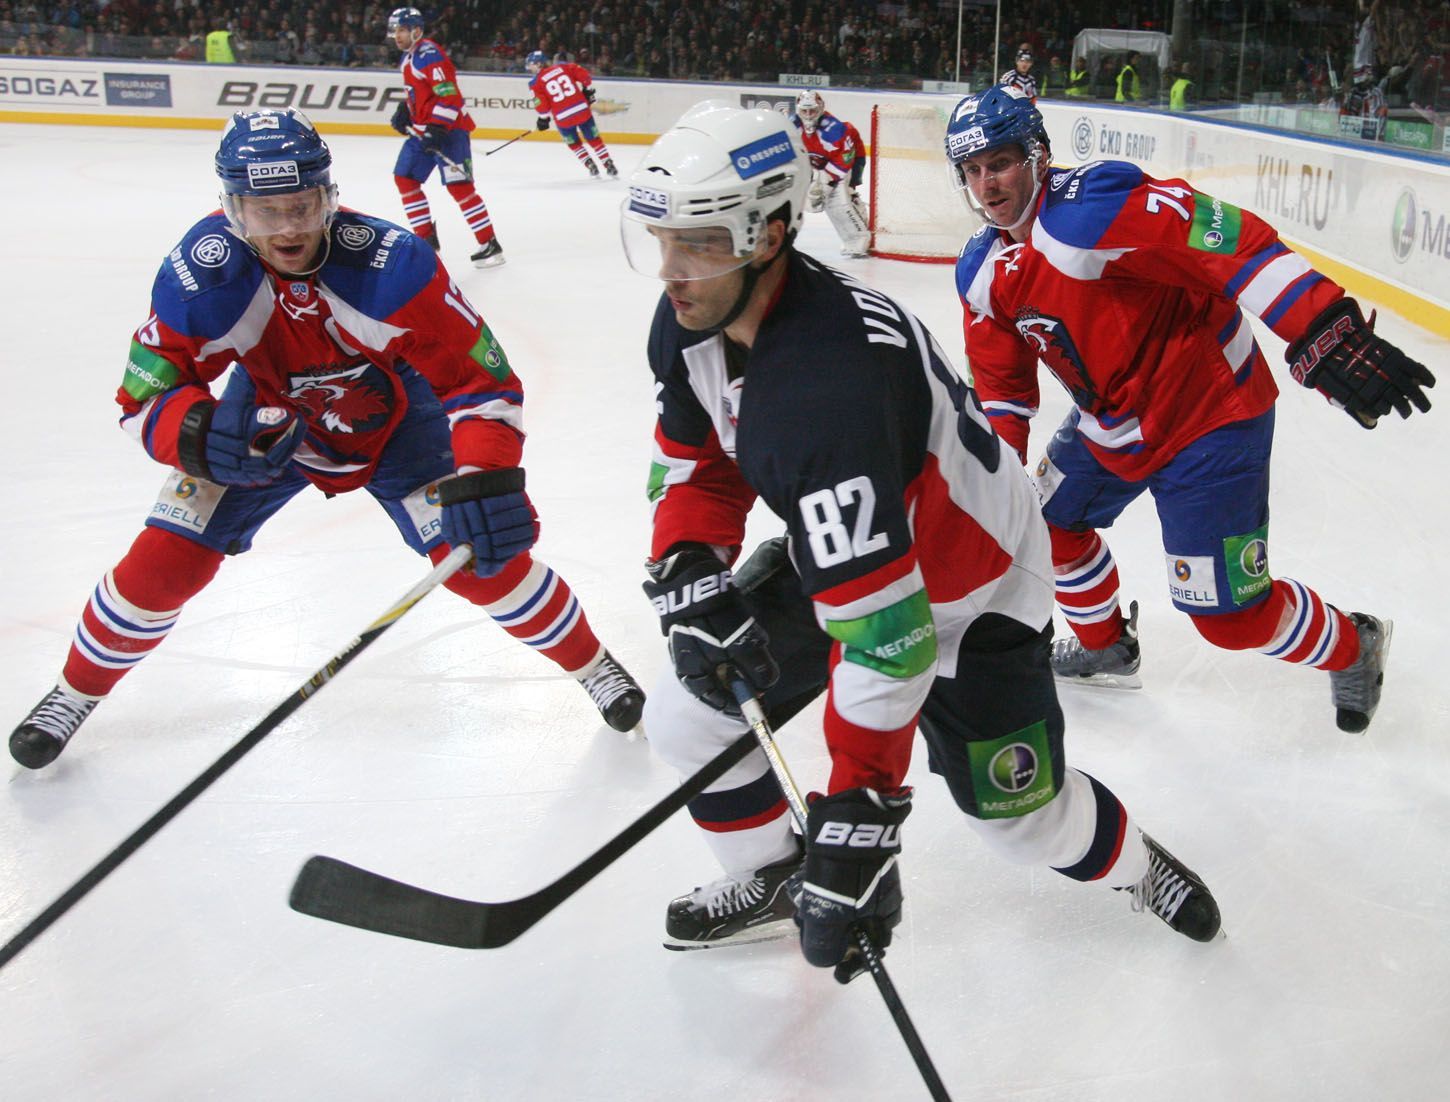 Hokejisté Lva Praha Jiří Novotný a Nathan Oystrick dohánějí Michala Vondrku v utkání KHL 2012/13 proti Slovanu Bratislava.